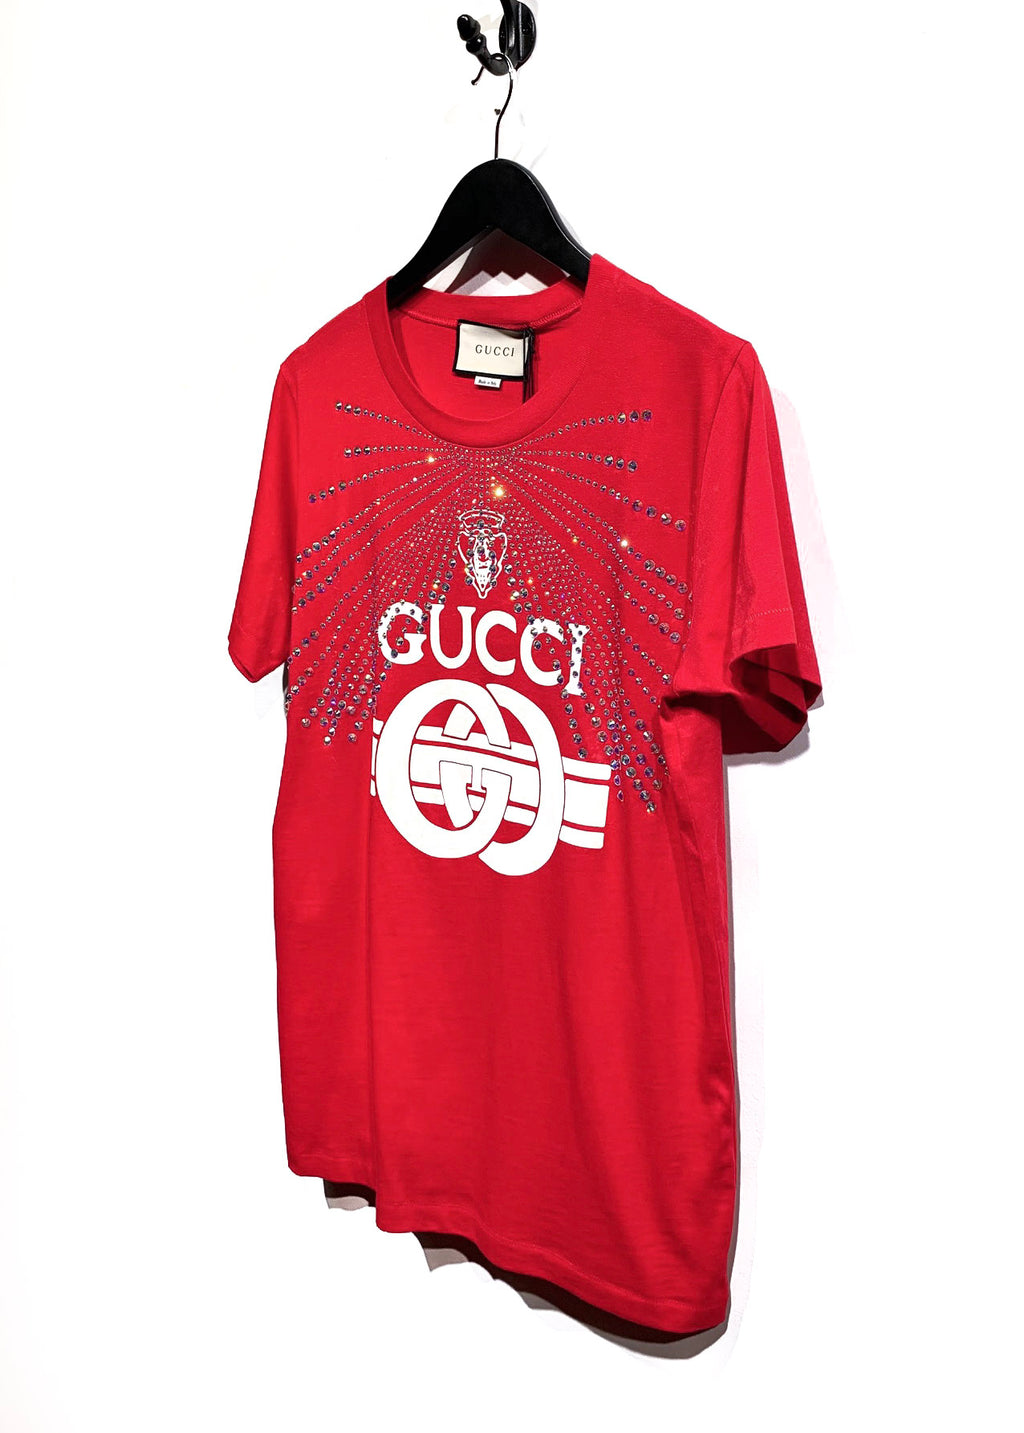 T-shirt rouge à imprimé graphique et logo Gucci 2019 et cristaux Swarovski